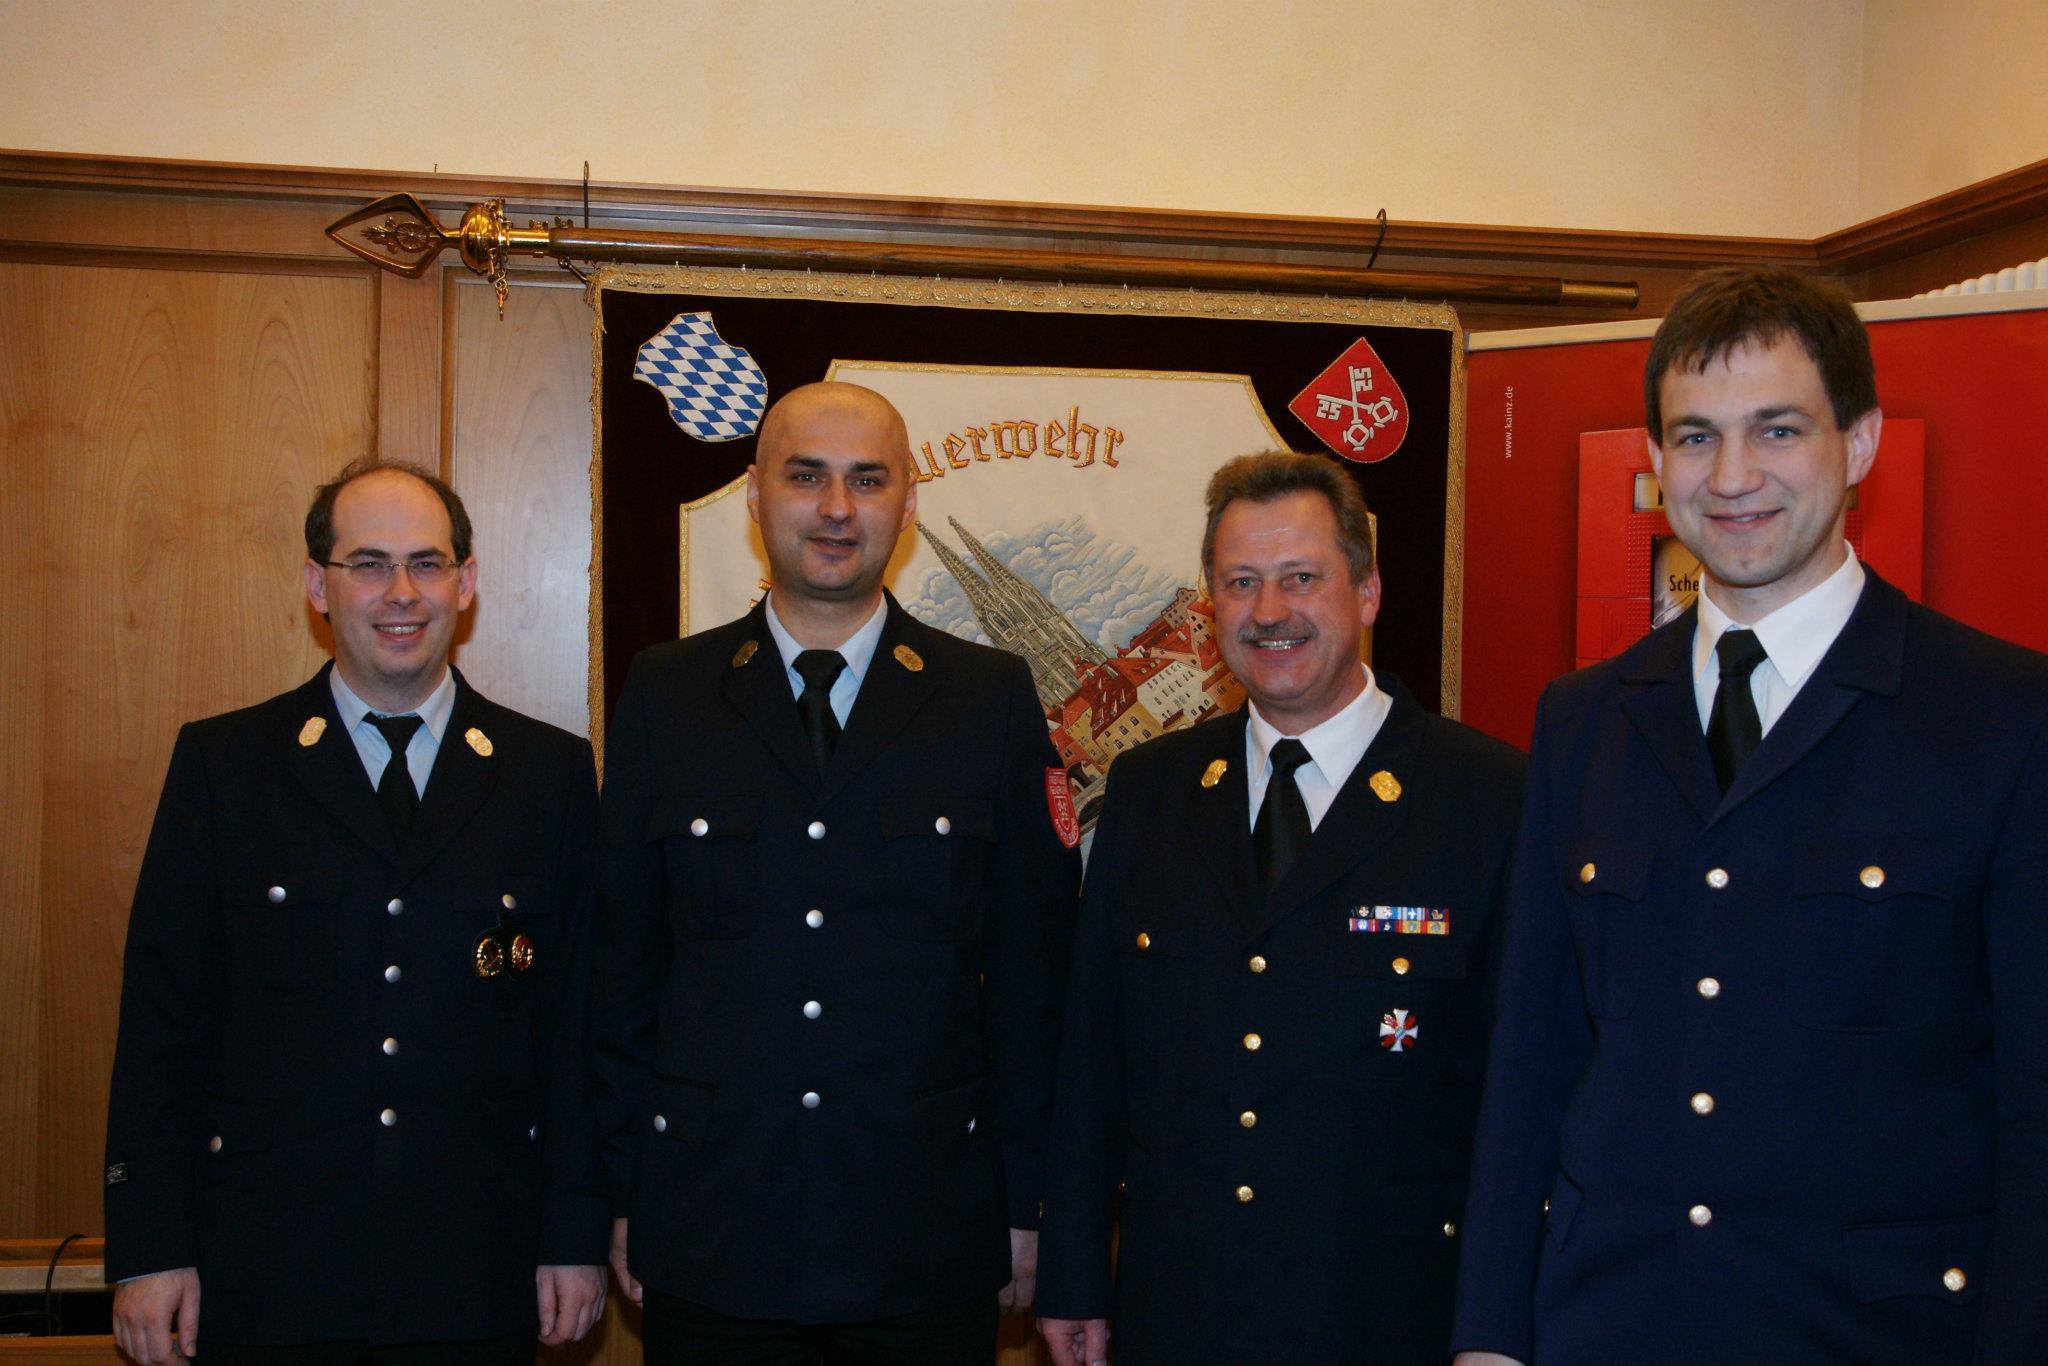 Felix alaturi de seful de la pompierii voluntari din Regensburg (cel cu mustata)